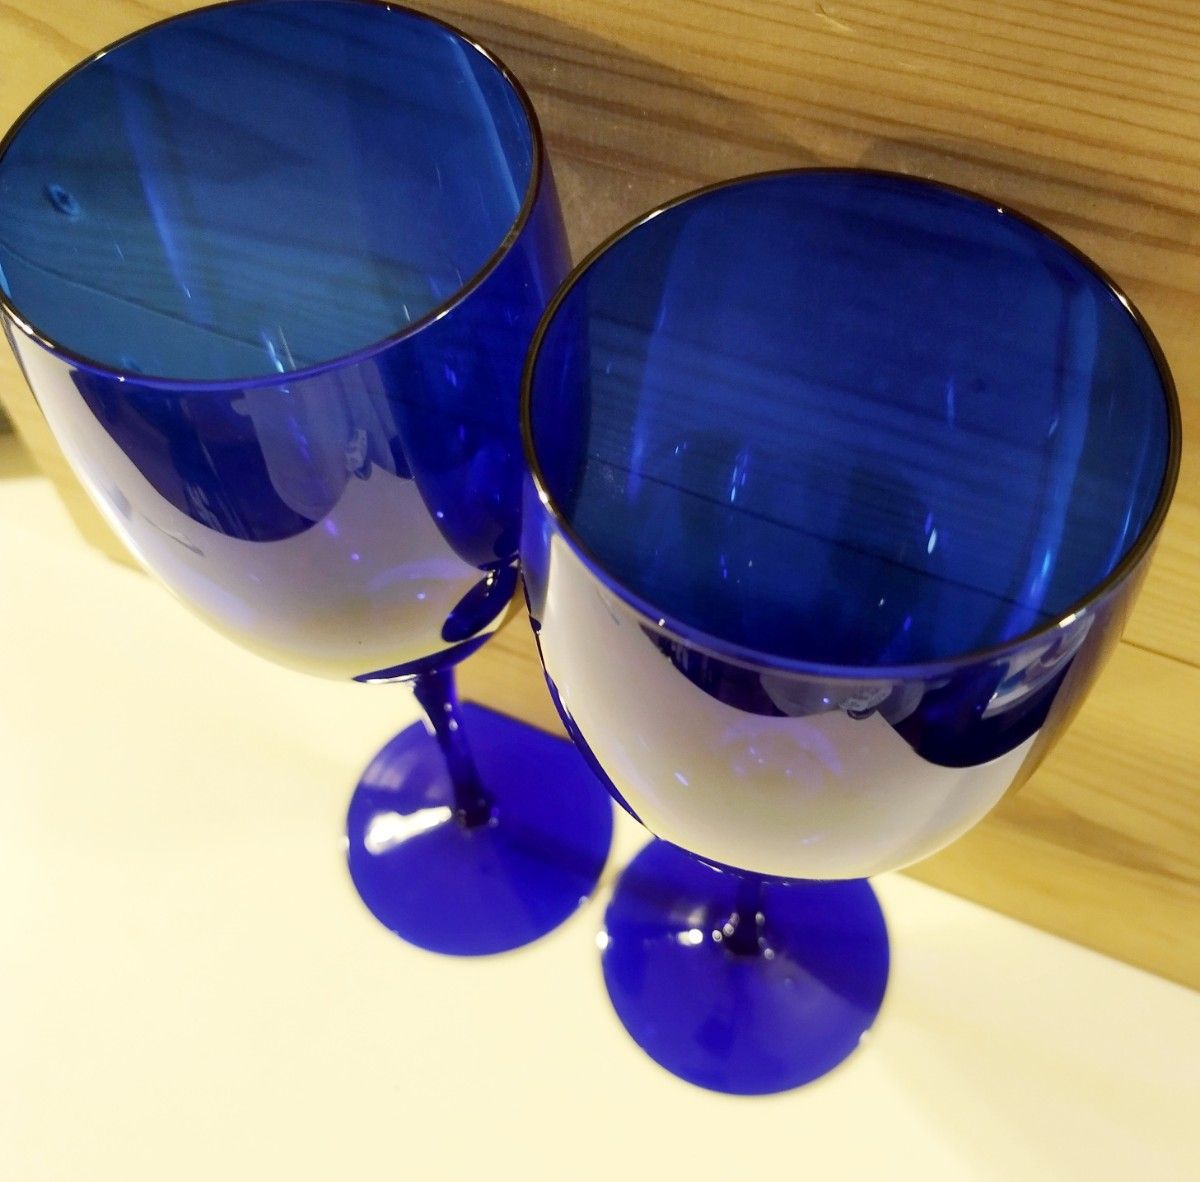 4個セット ペア ワイングラス シャンパングラス コバルトブルー エメラルドグリーン グラス ワイングラスペア ガラス